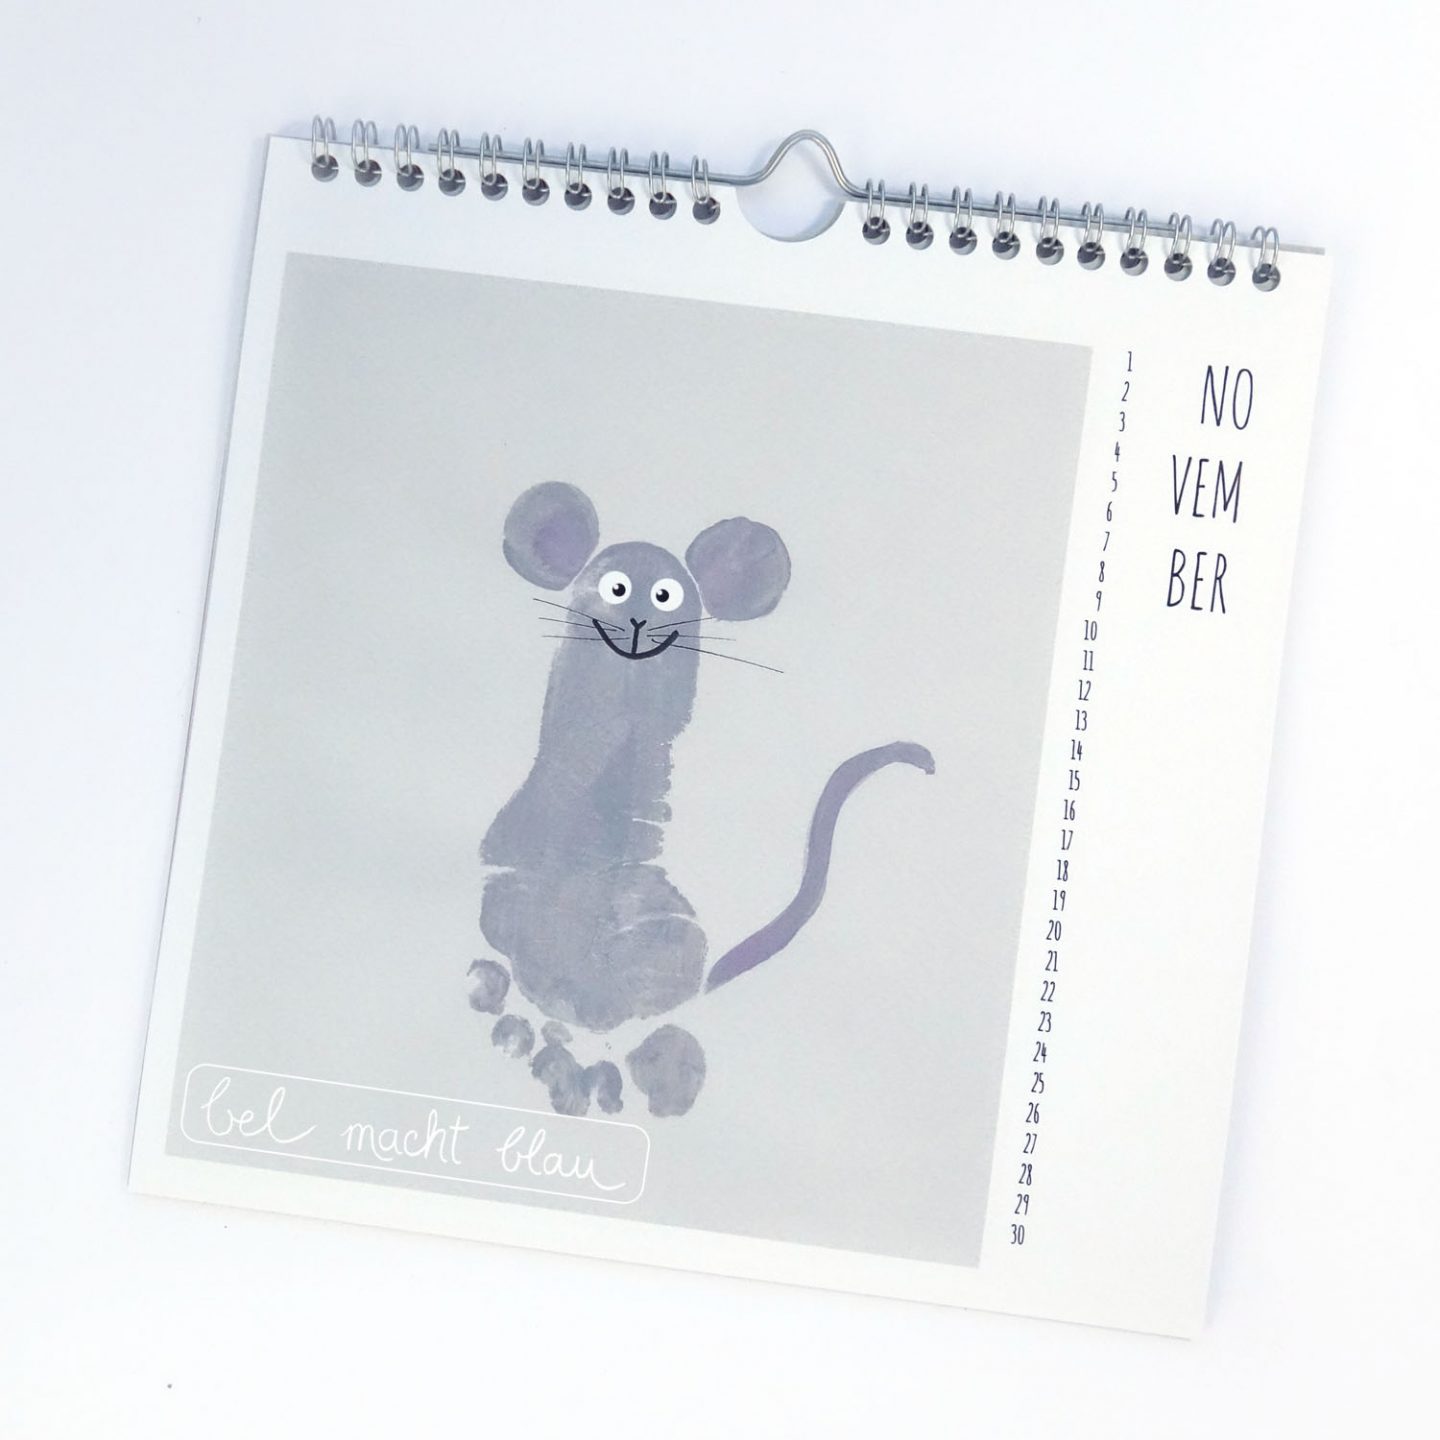 Fußabdruck Maus - Kalender mit Fußabdrücken